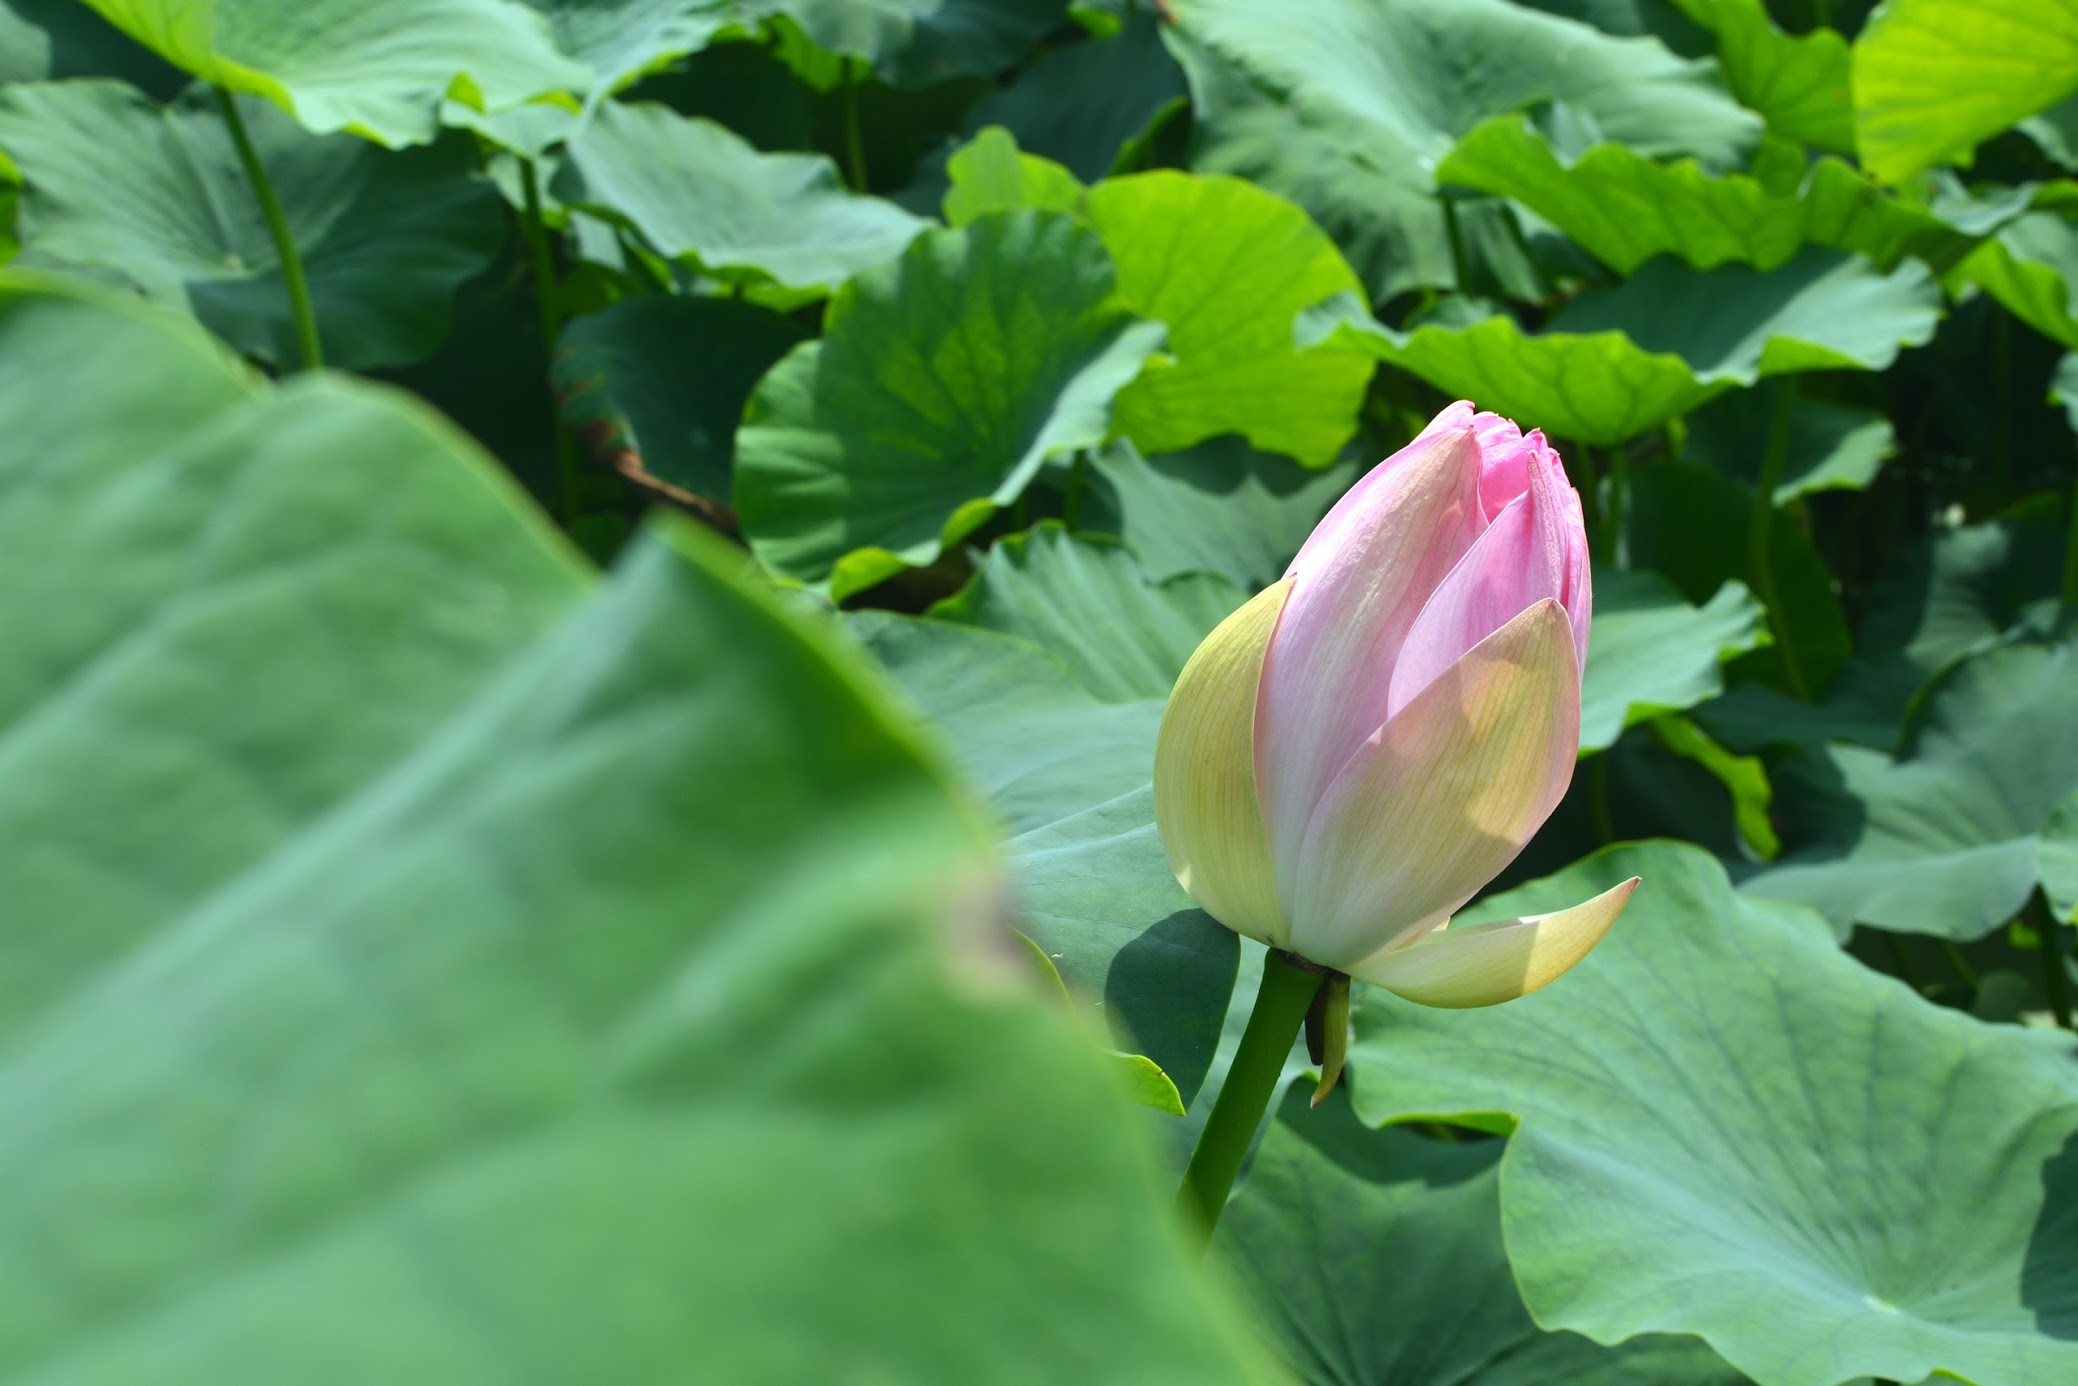 徳島県鳴門市のレンコン畑 Lotus Land Of Tokushima Pref Japan 物語を届けるしごと